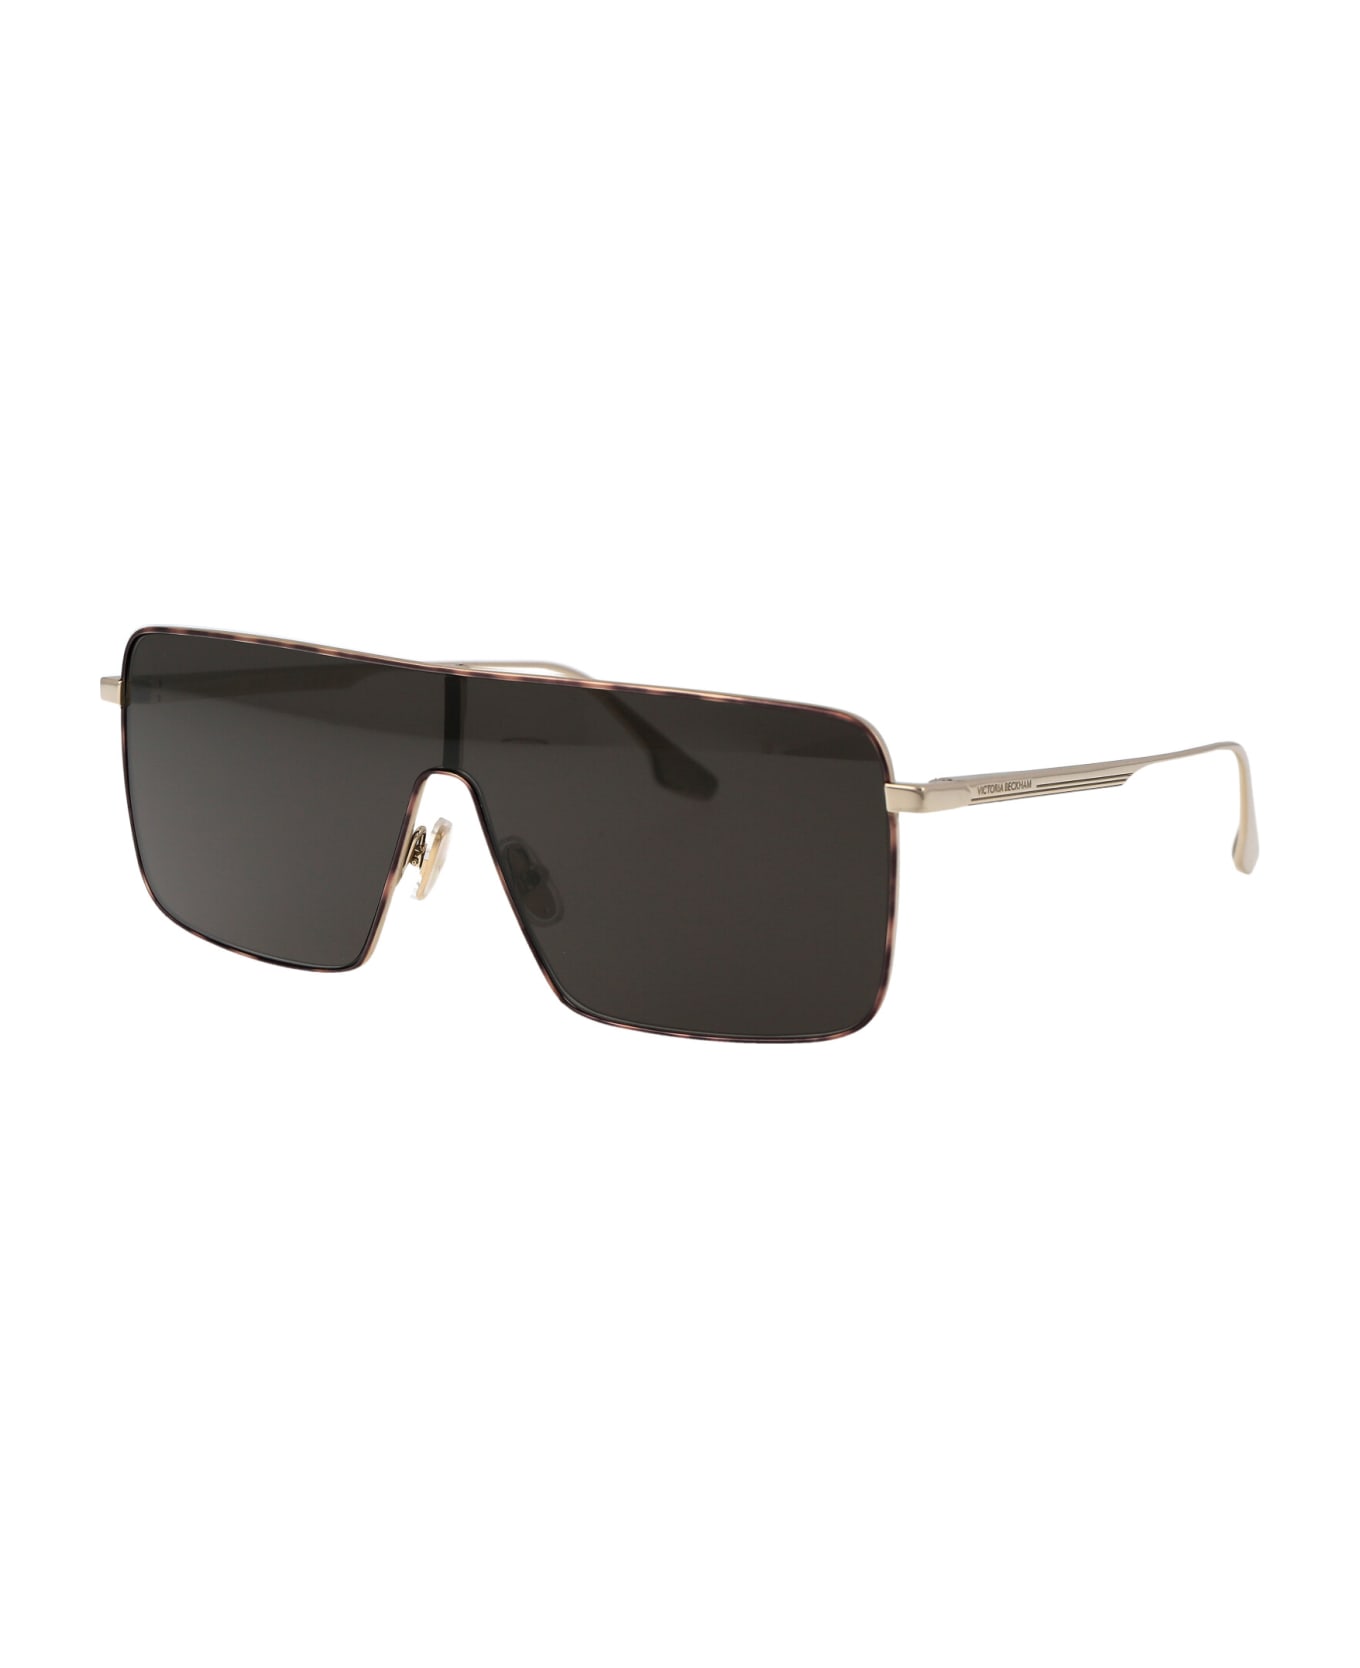 Victoria Beckham Vb238s Sunglasses - 701 GOLD/SMOKE